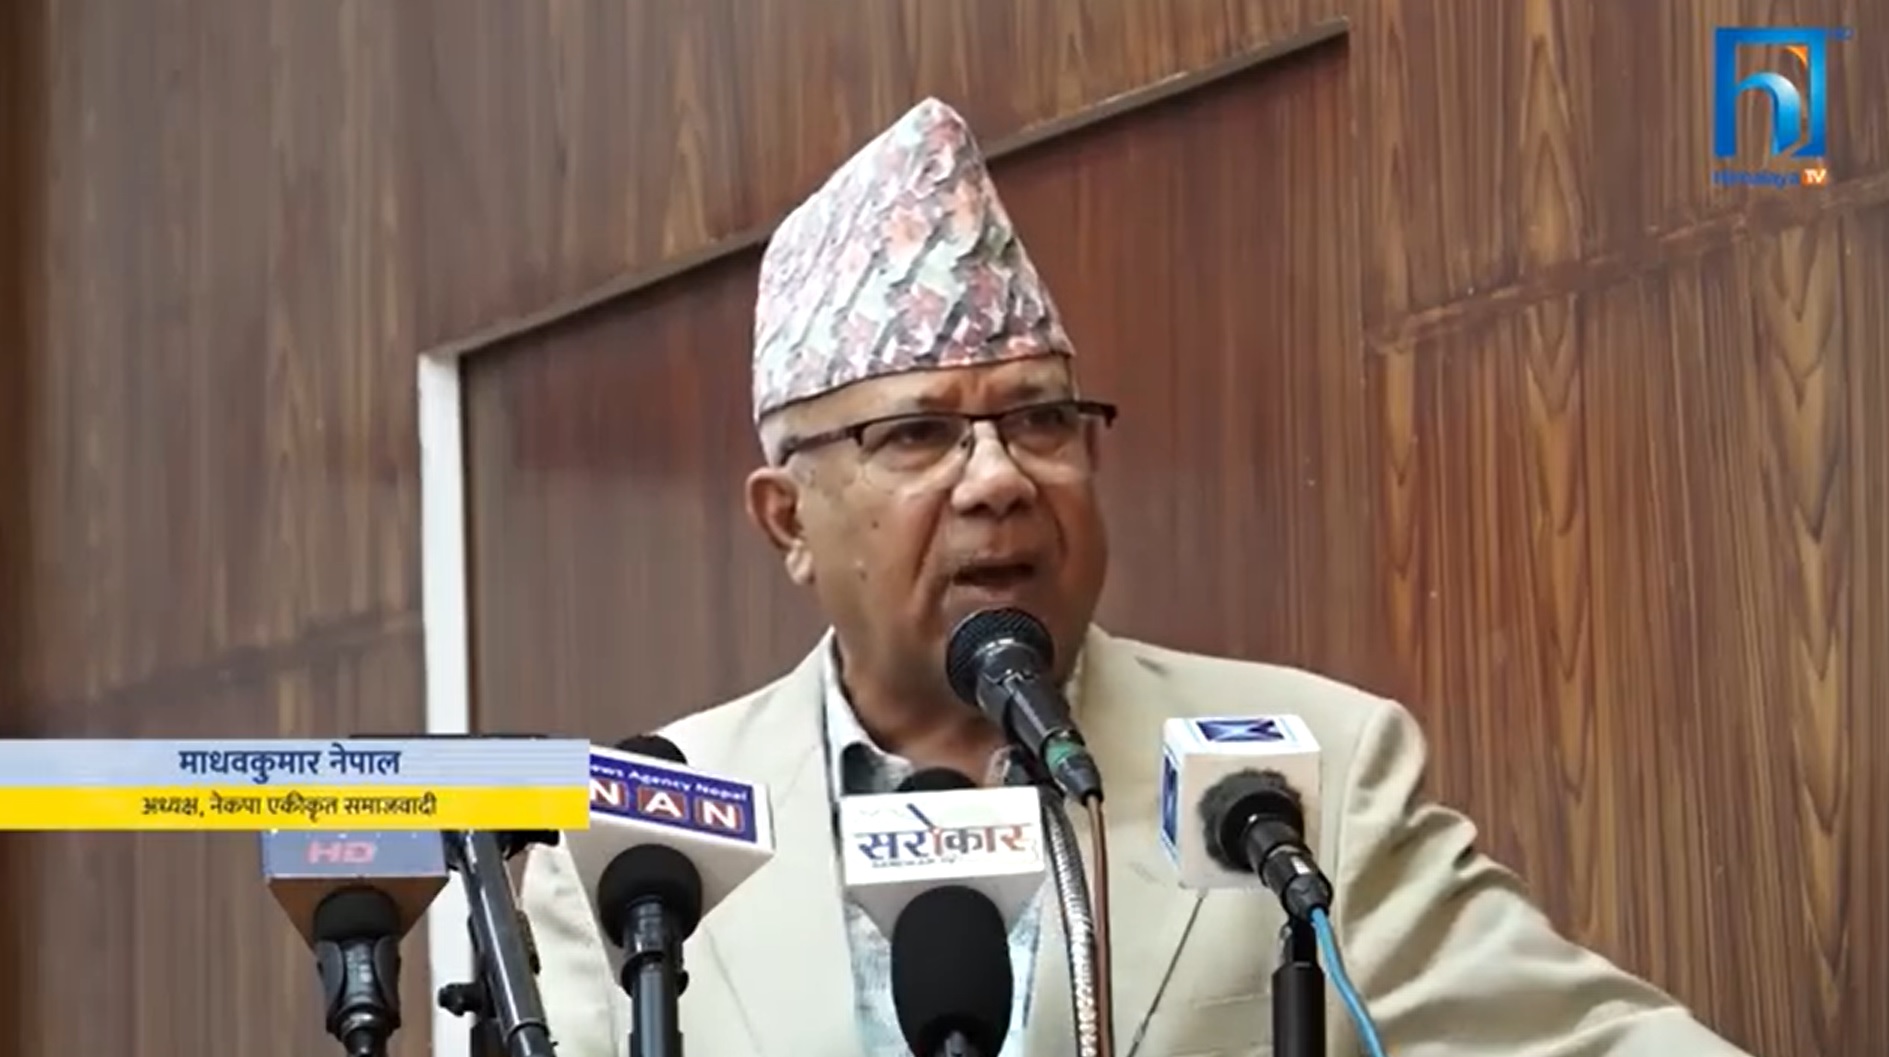 राष्ट्र र जनताको हितका लागि नै एकीकृत समाजवादी पार्टी बनेको हो : अध्यक्ष नेपाल